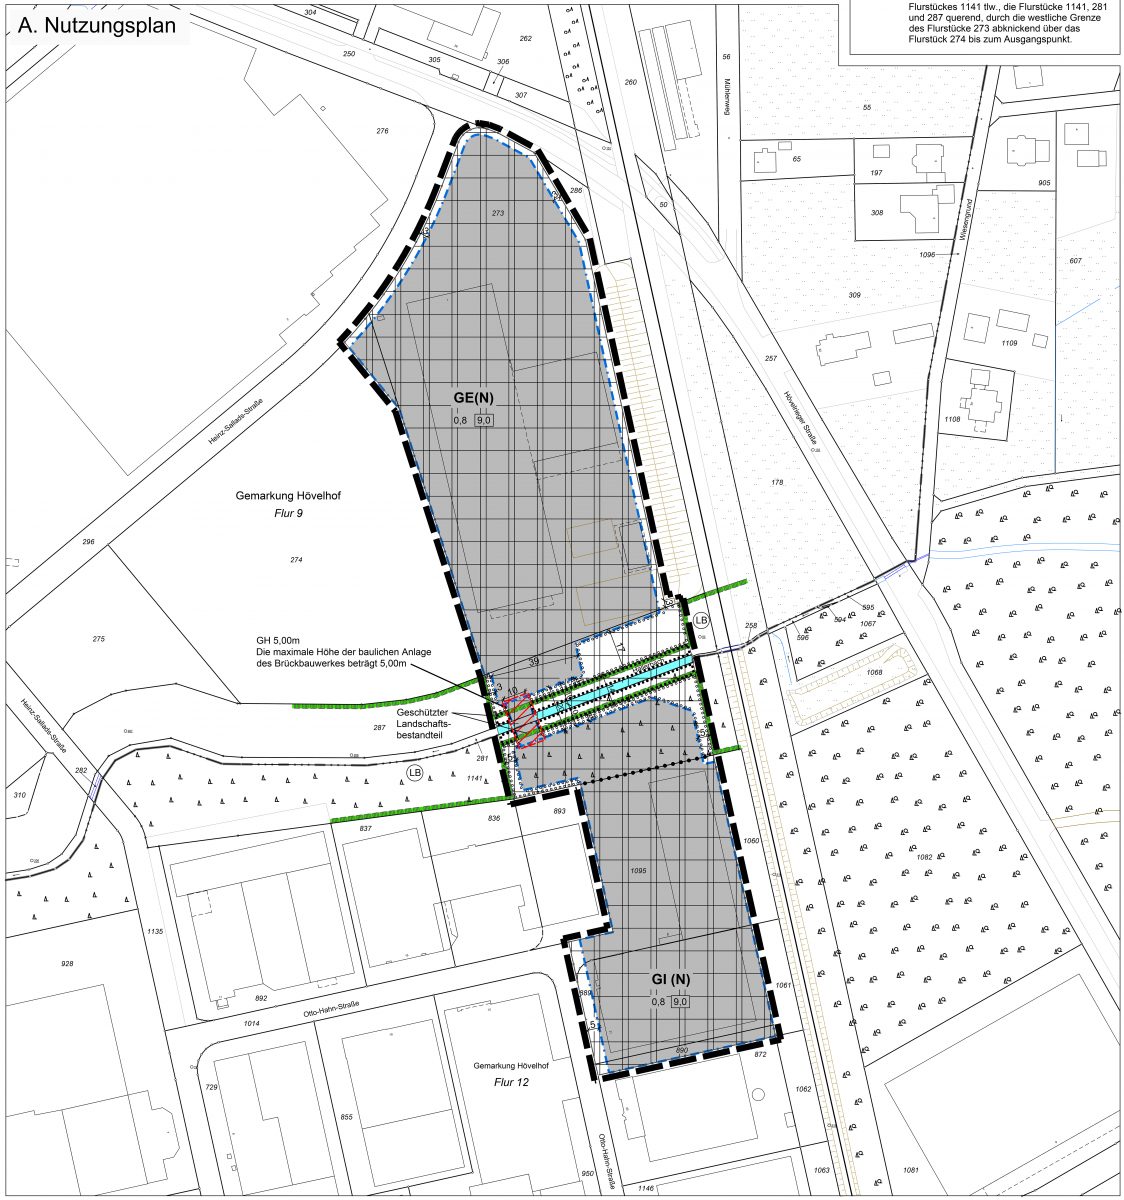 Planzeichnung zum B-Plan Nr. 51 "Heinz-Sallads-Straße" der Gemeinde Hövelhof